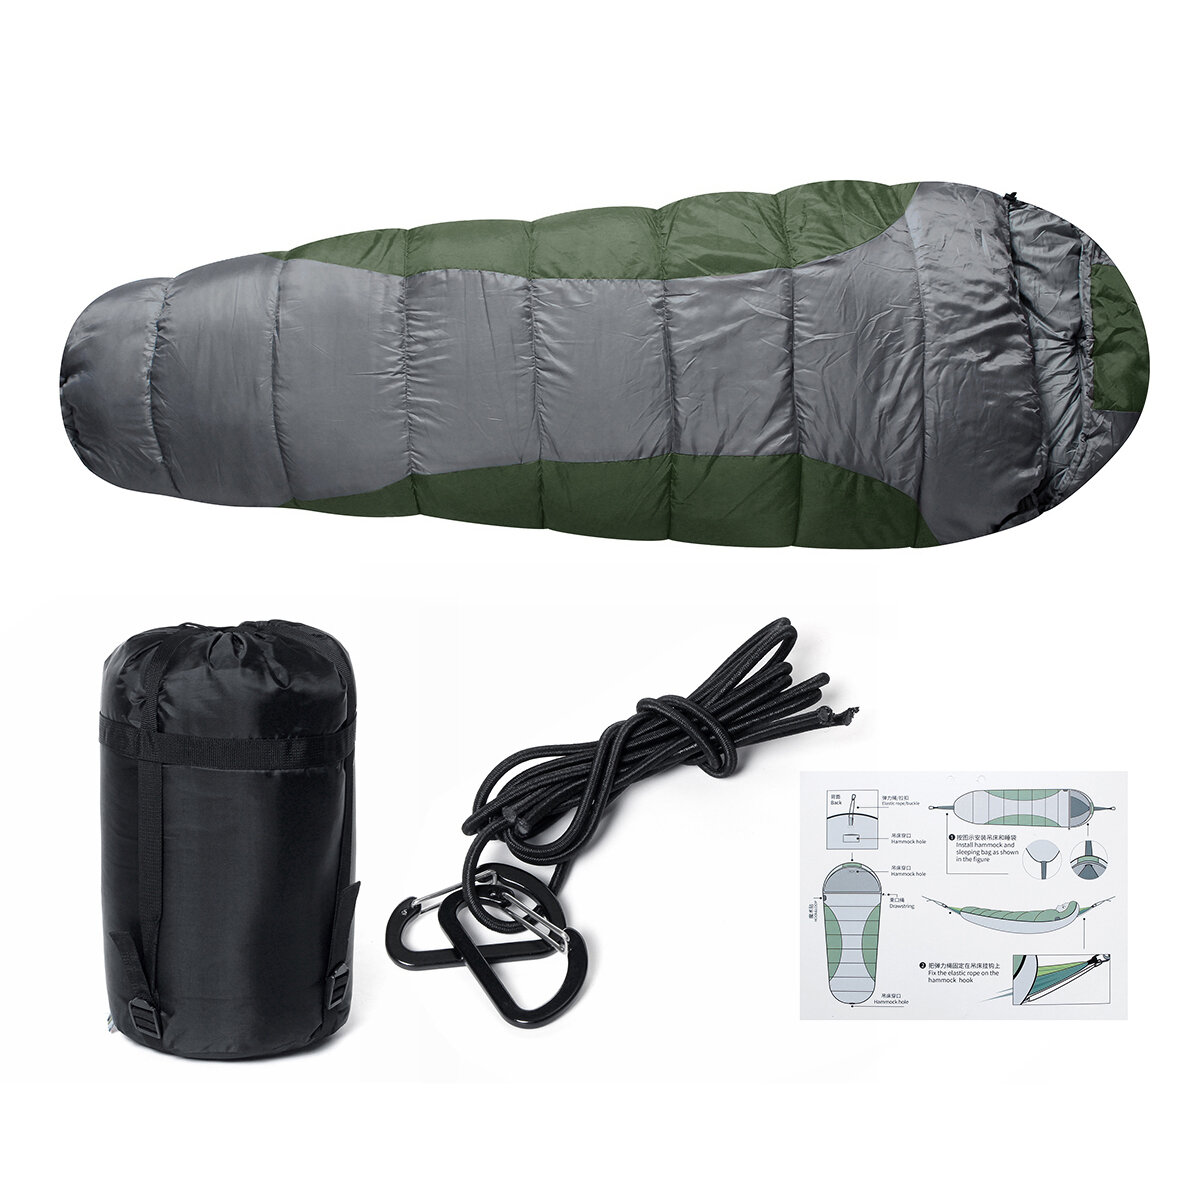 Saco de dormir individual de poliéster impermeável 210T de 230x50cm para acampar e viajar ao ar livre.